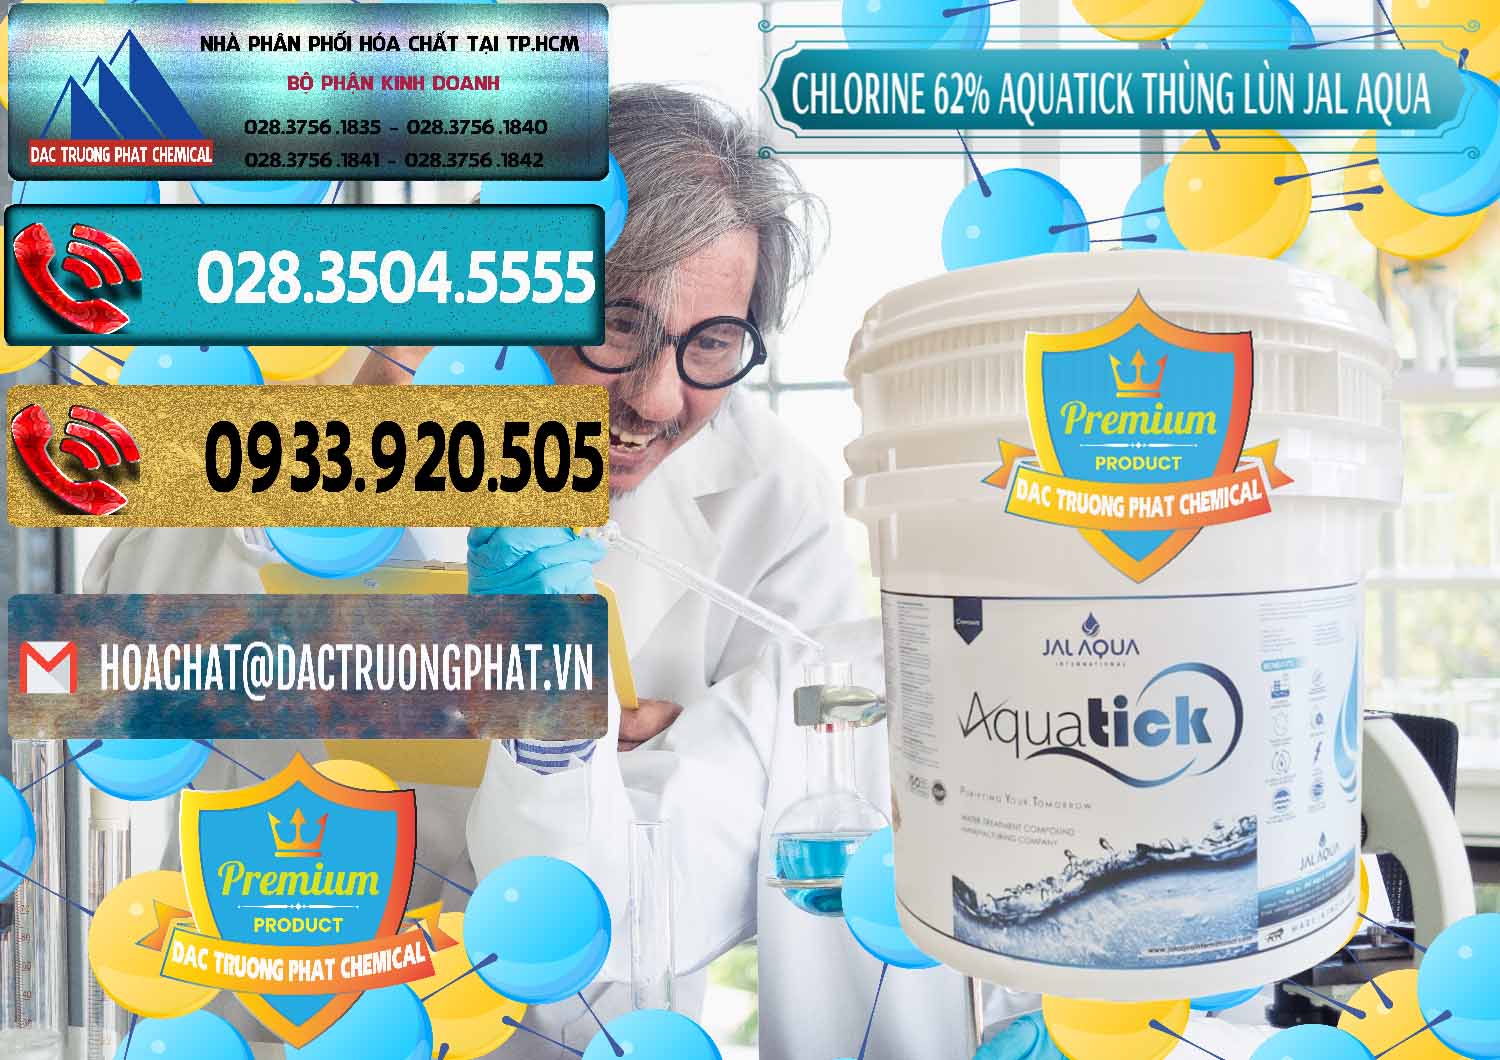 Công ty bán và cung ứng Chlorine – Clorin 62% Aquatick Thùng Lùn Jal Aqua Ấn Độ India - 0238 - Cty chuyên cung cấp - kinh doanh hóa chất tại TP.HCM - hoachatdetnhuom.com